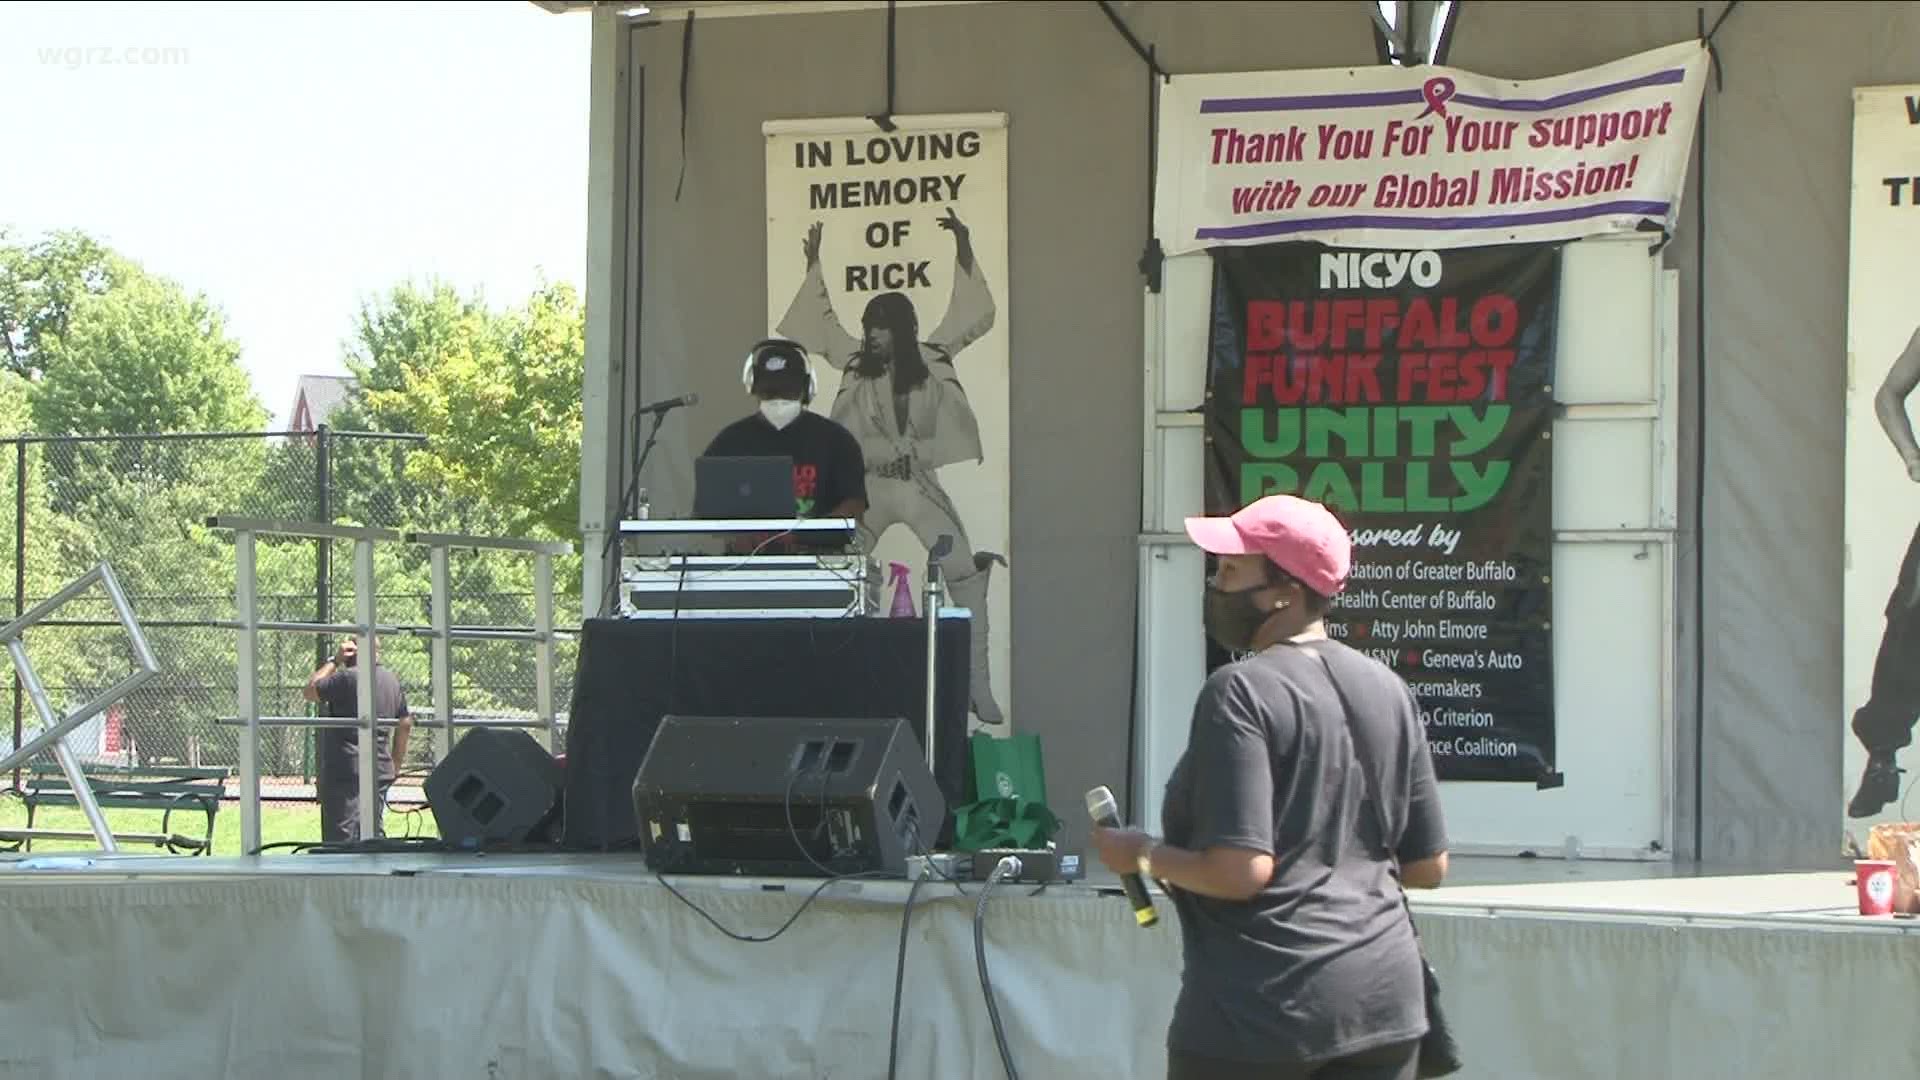 Buffalo Funk Fest weekend kicks off Friday